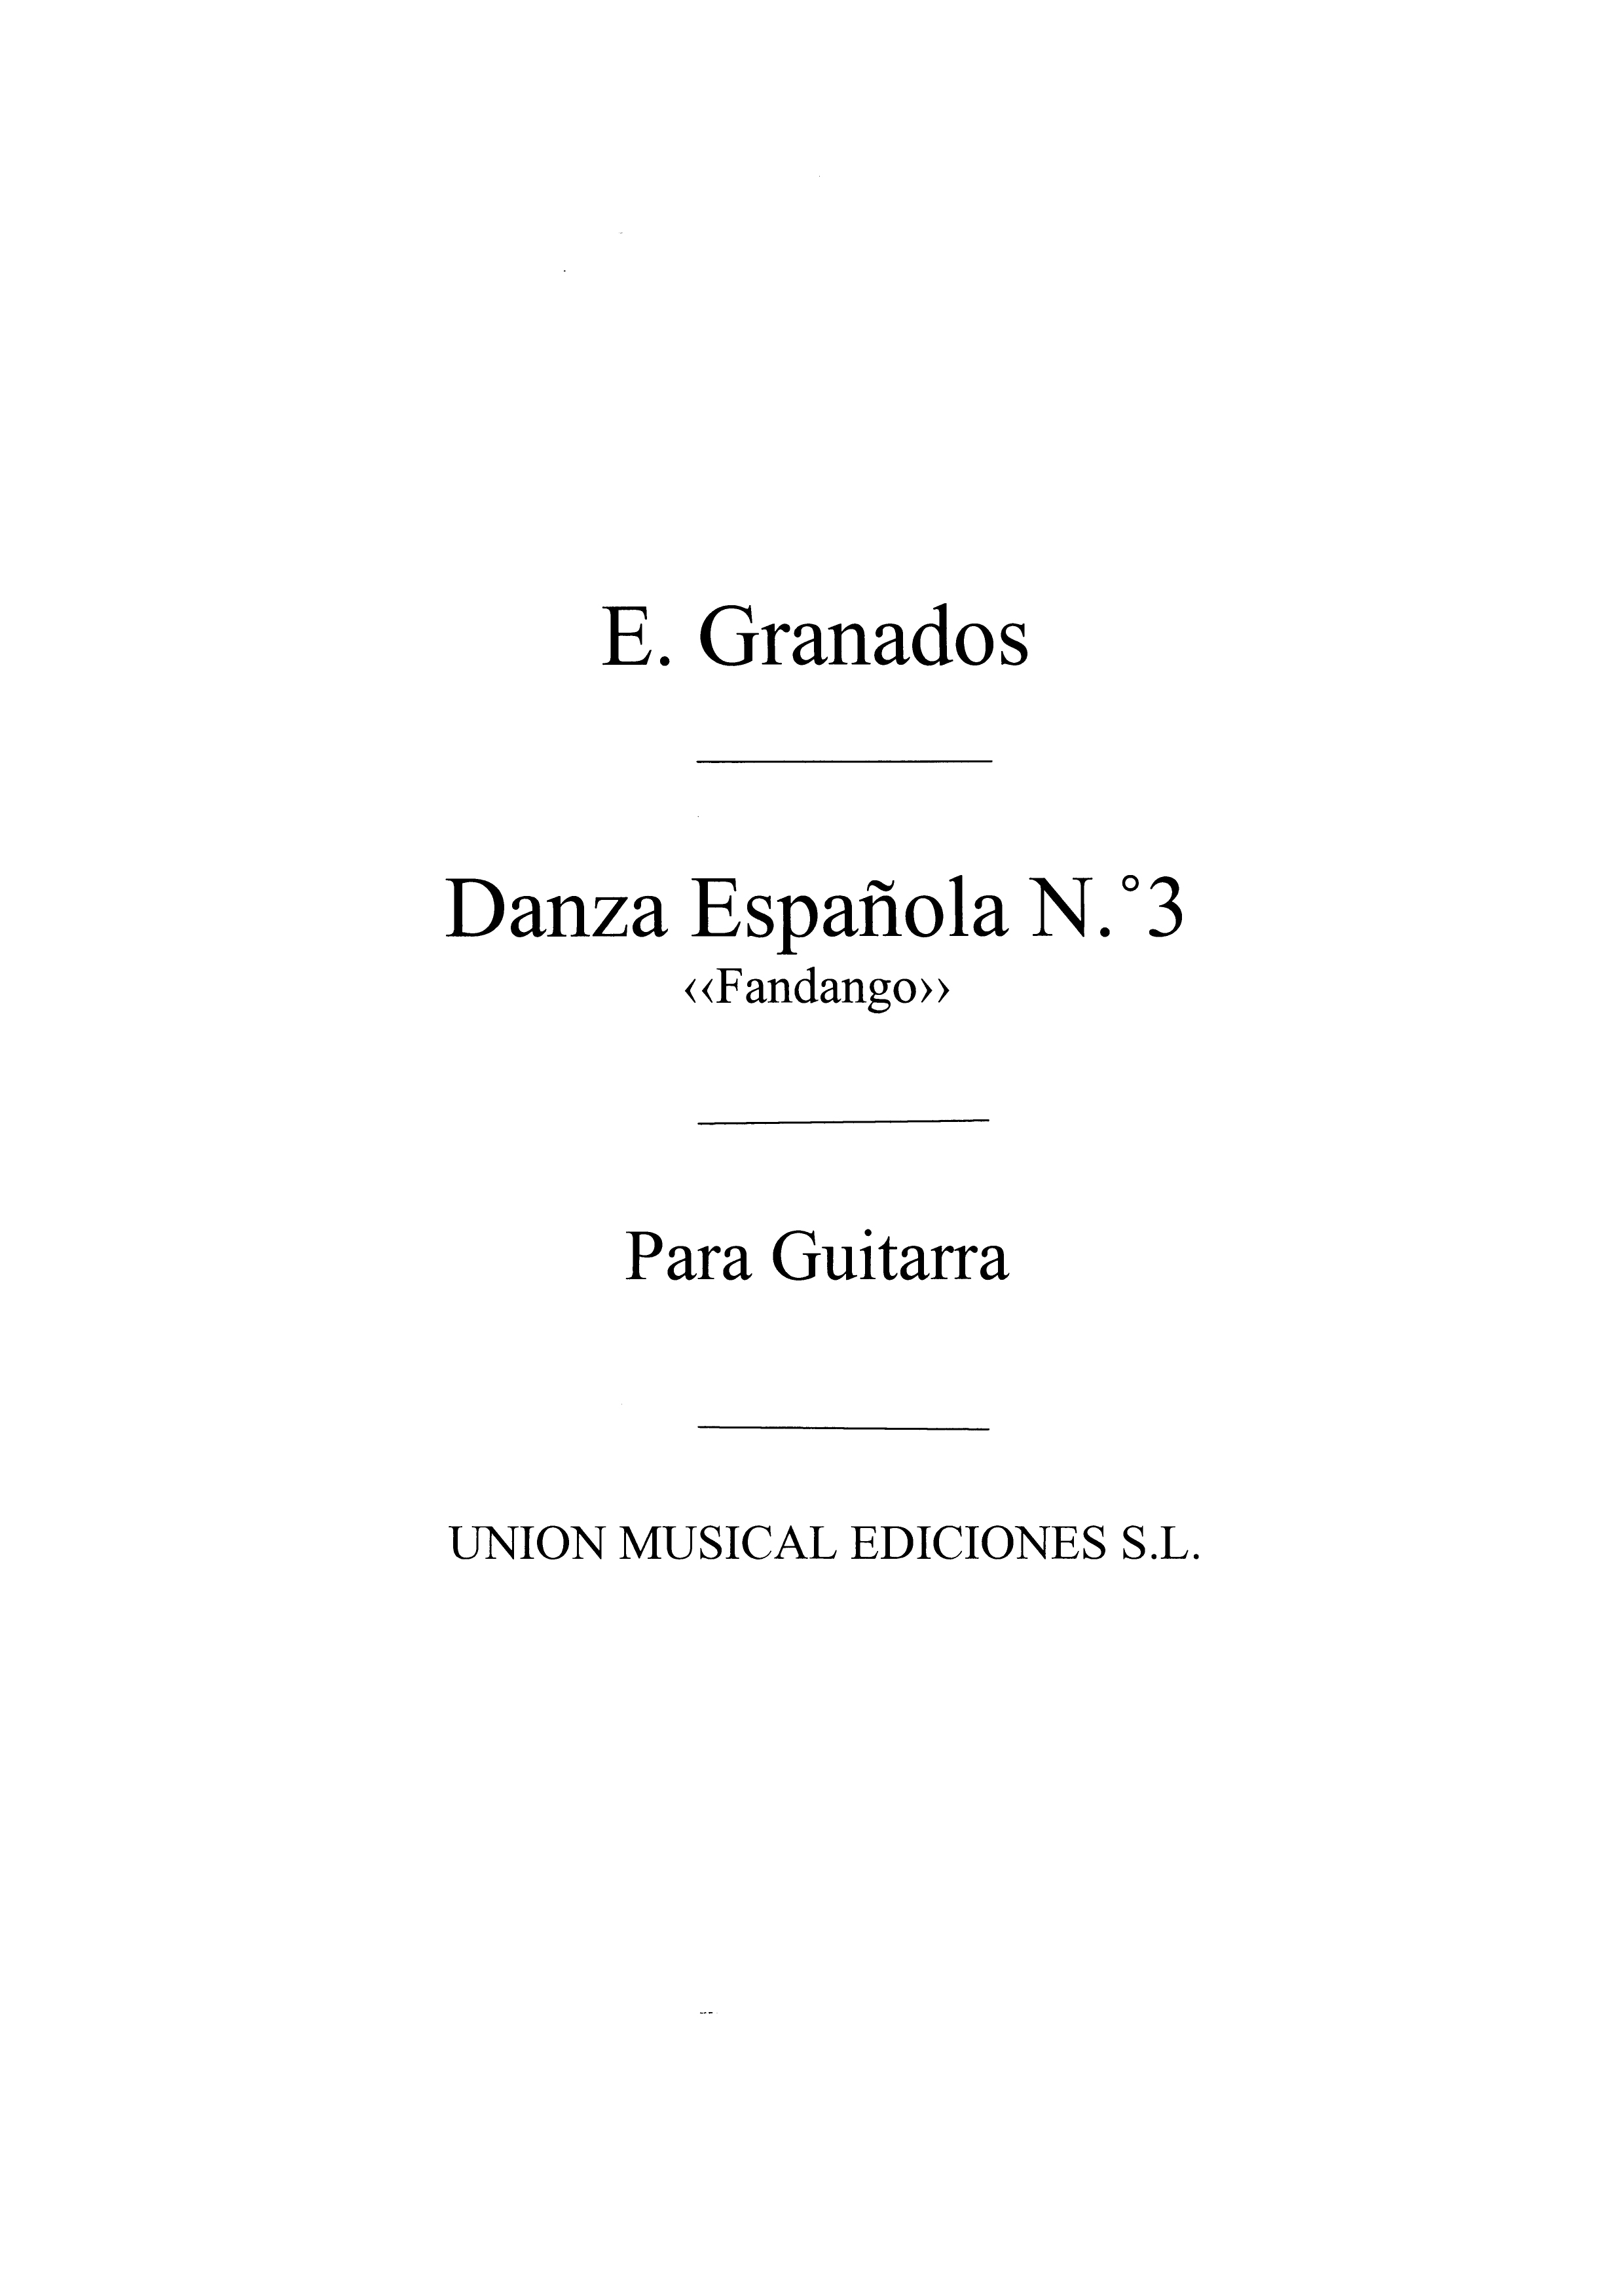 Enrique Granados: Danza Espanola No.3 Fandango (azpiazu): Guitar: Instrumental